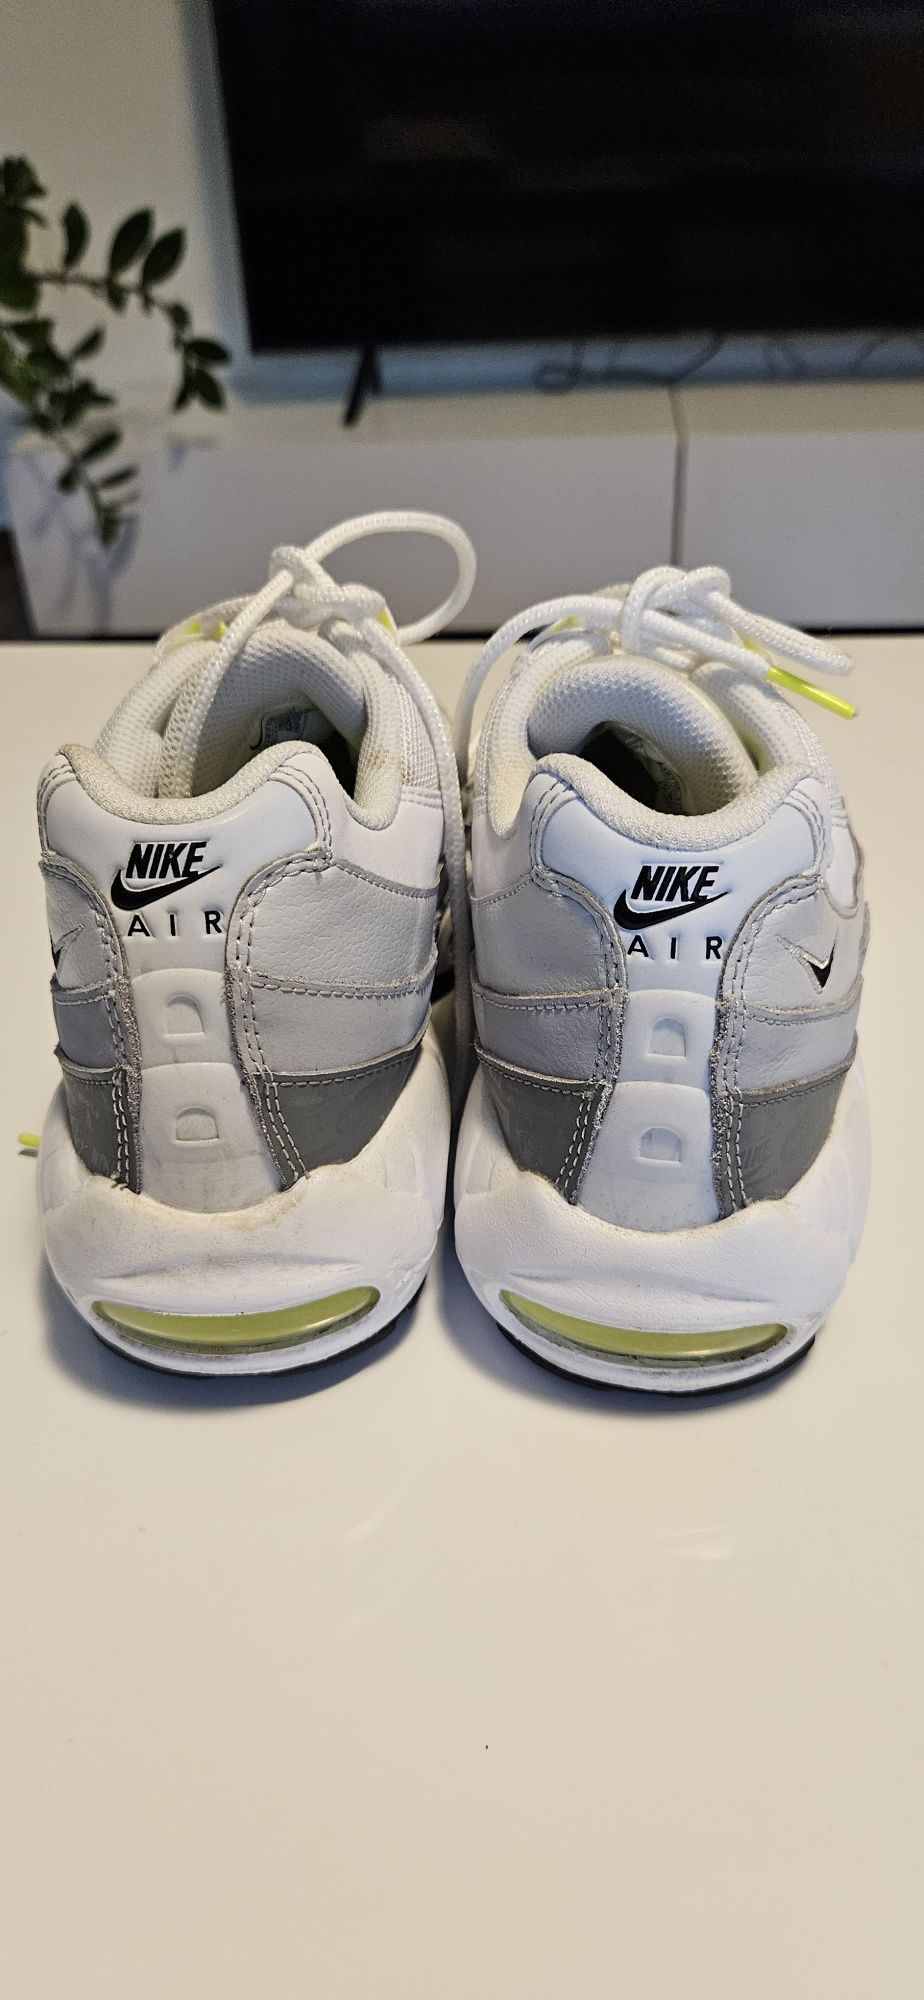 Nike air max 95 green/grey